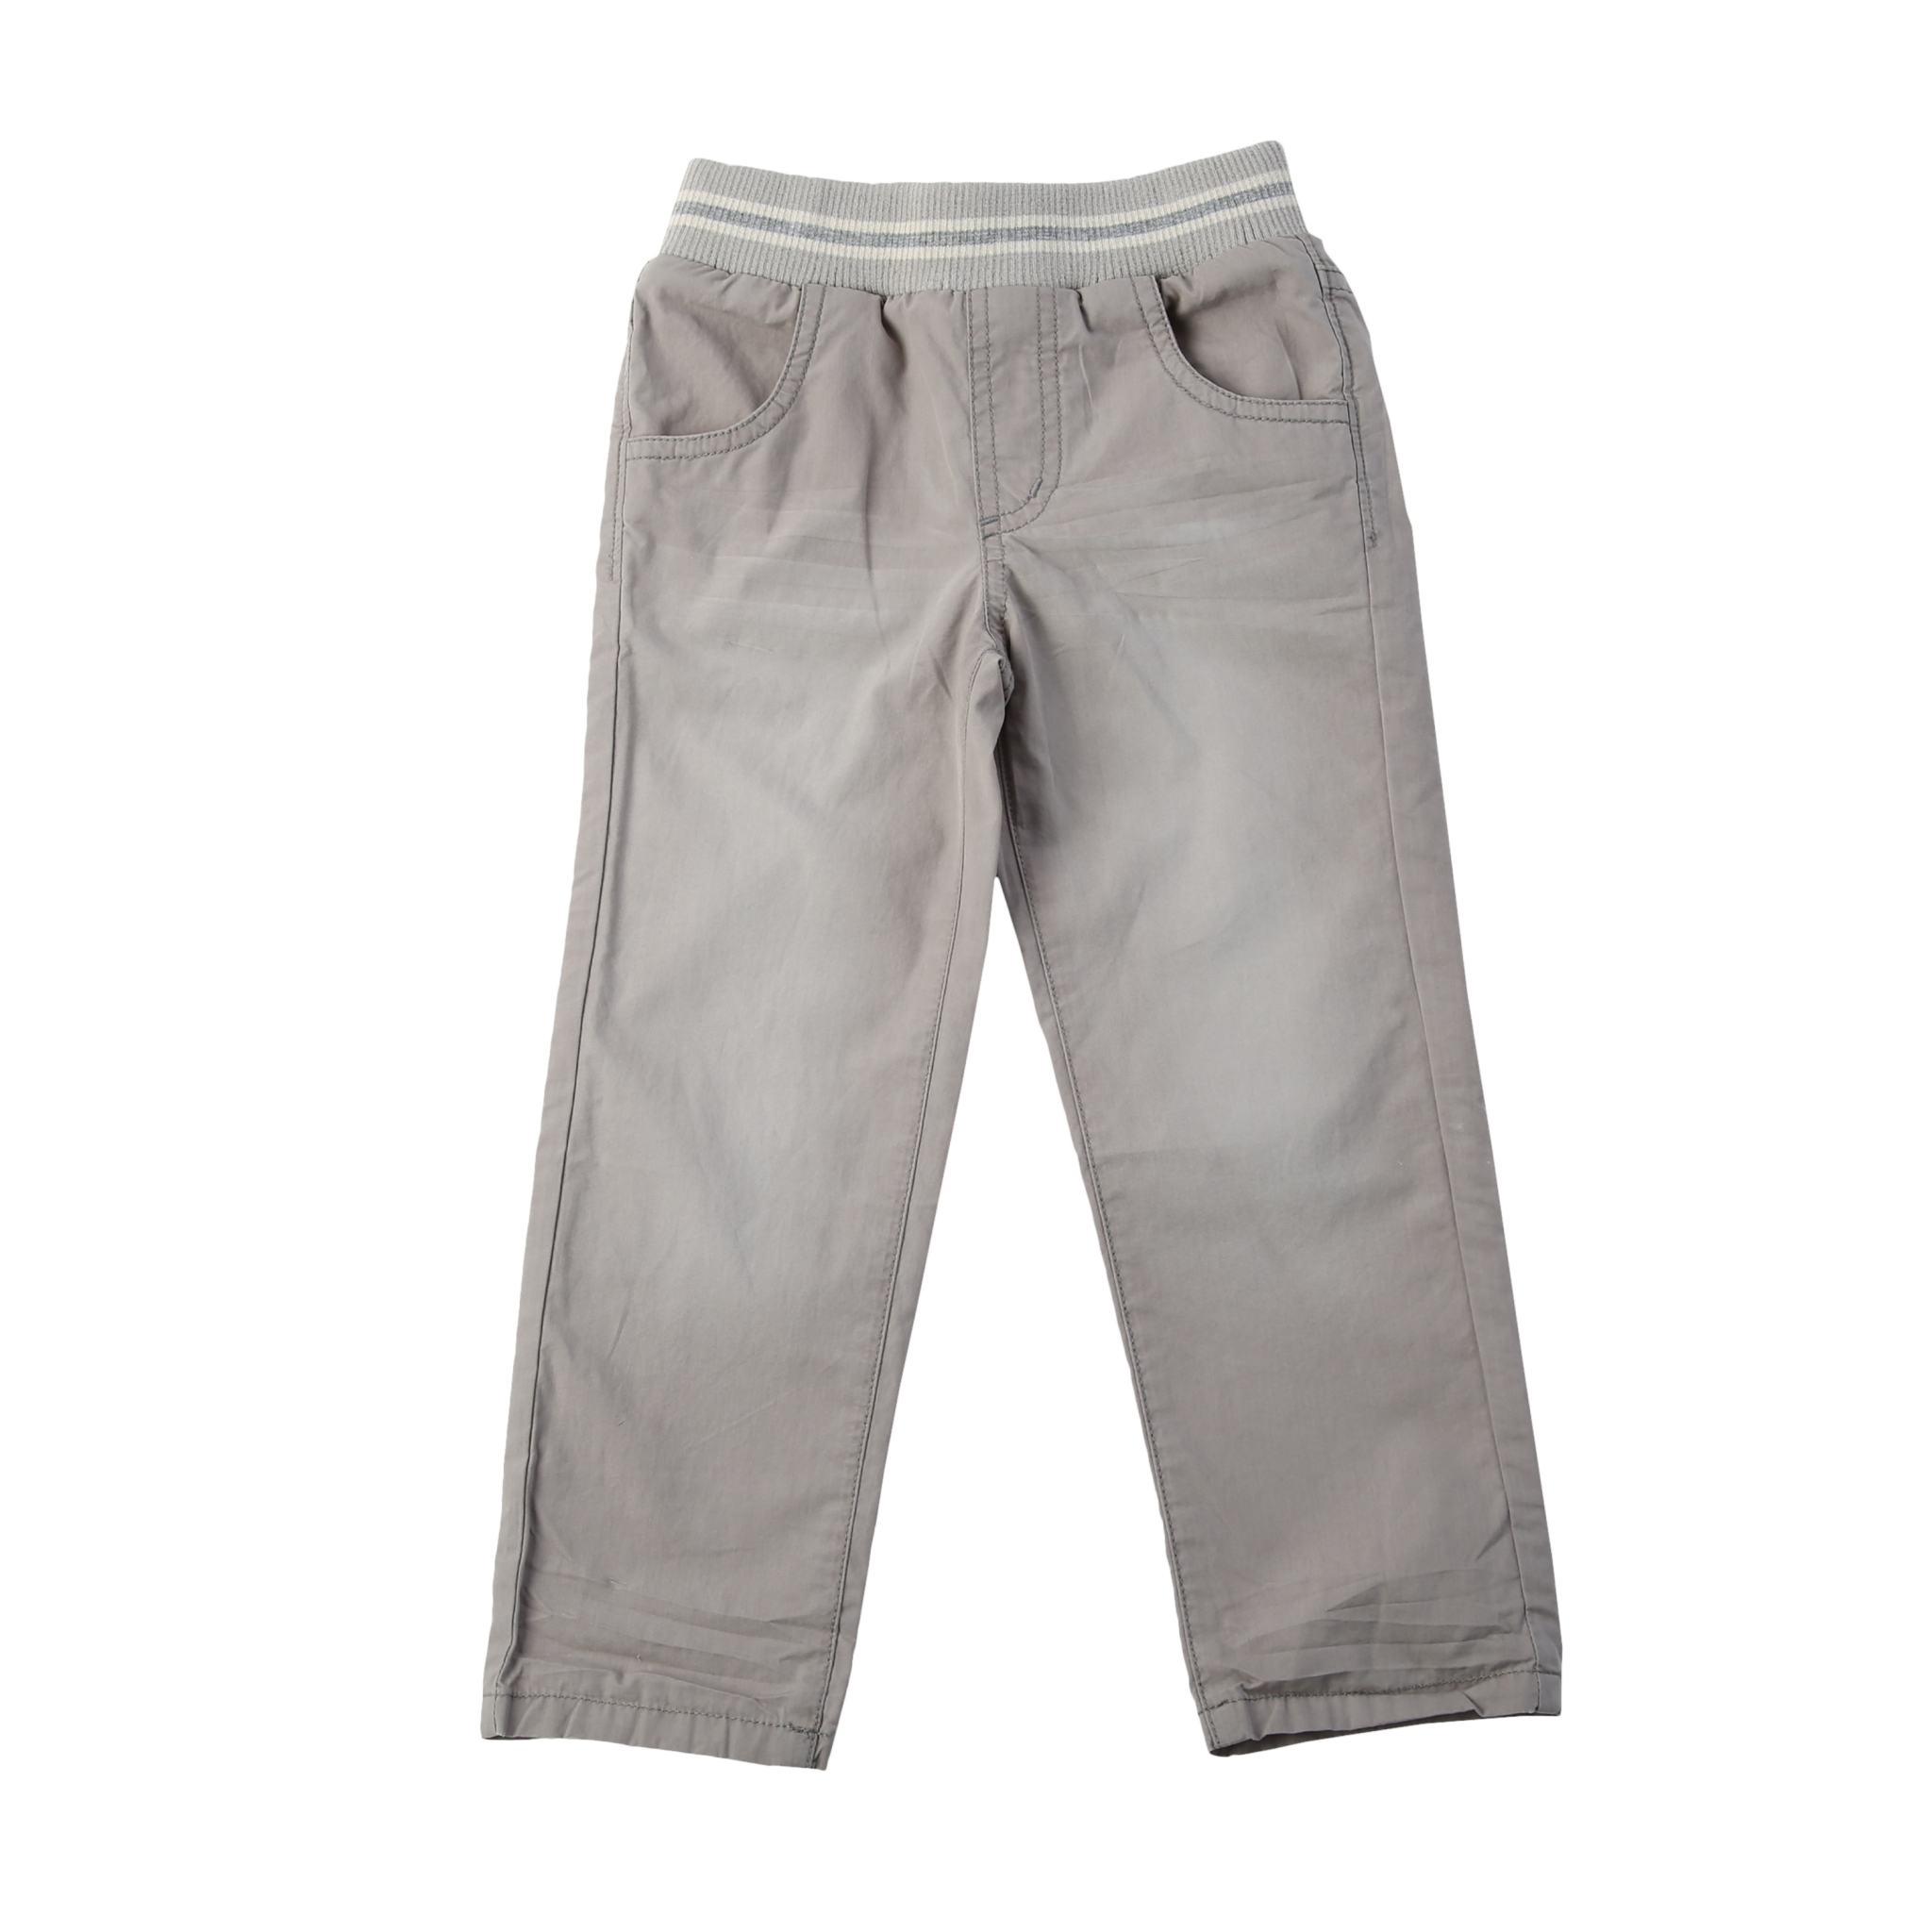 Khaki Brushed Cotton Twill Pant - Khaki Pants, Transparent background PNG HD thumbnail